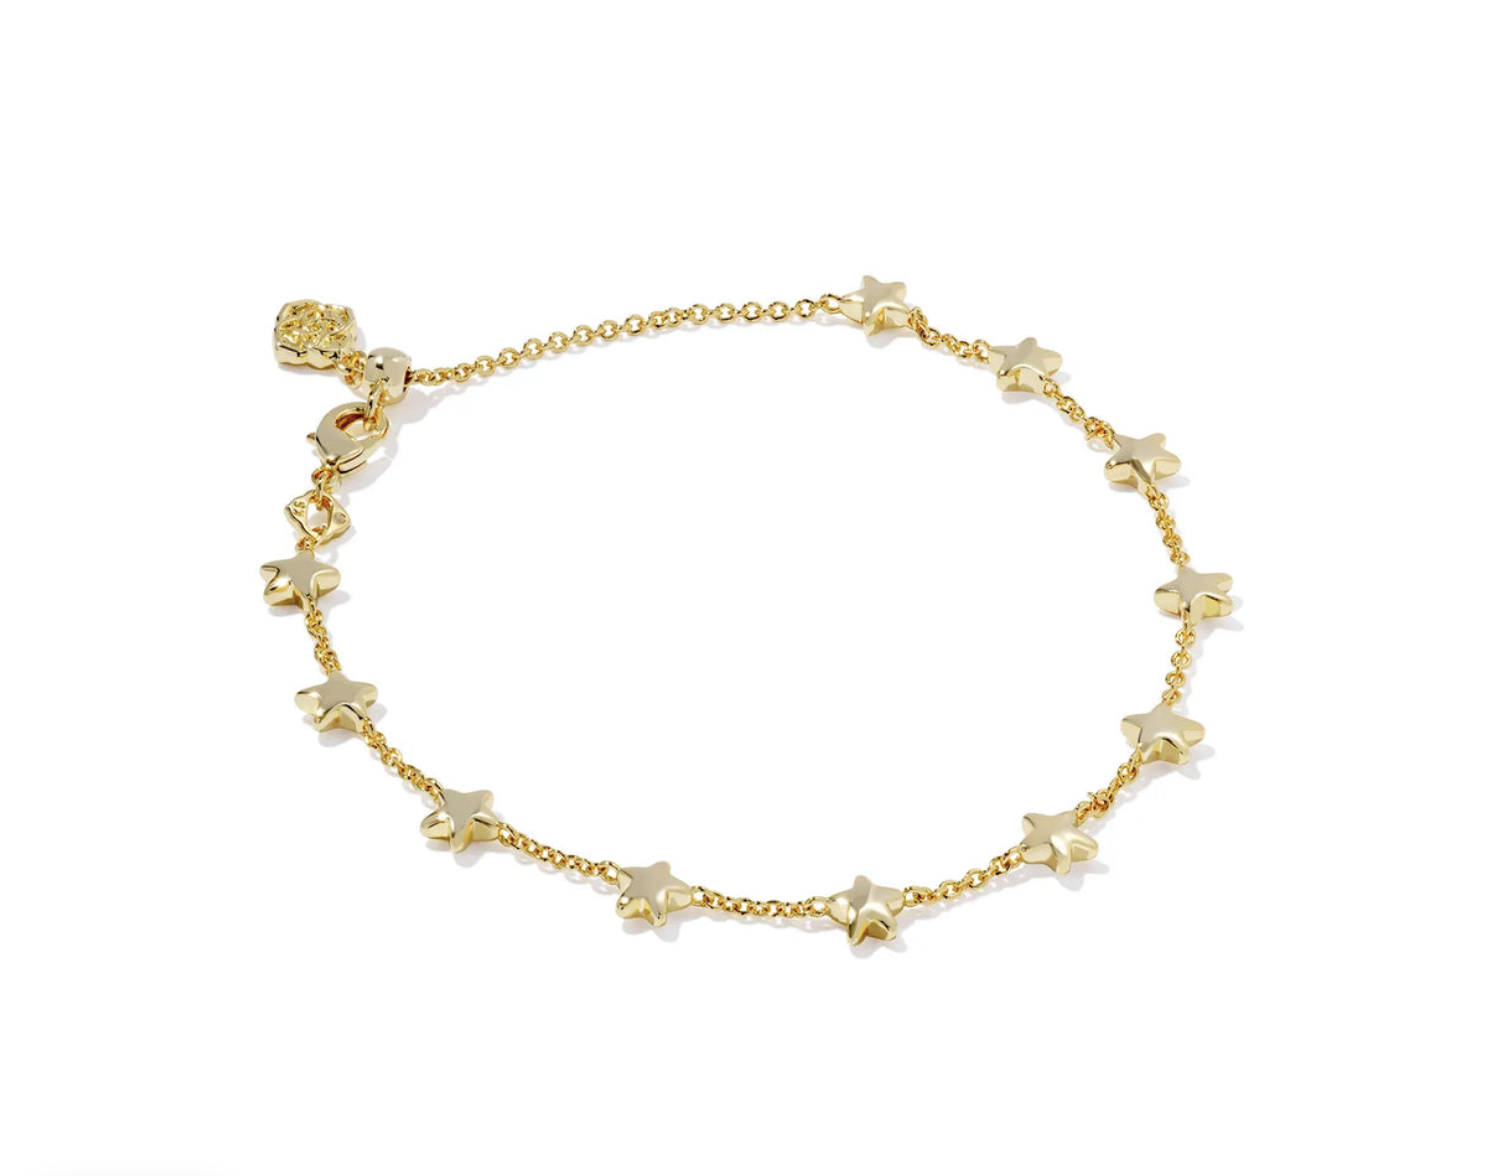 Sierra Star Gold Chain Bracelet